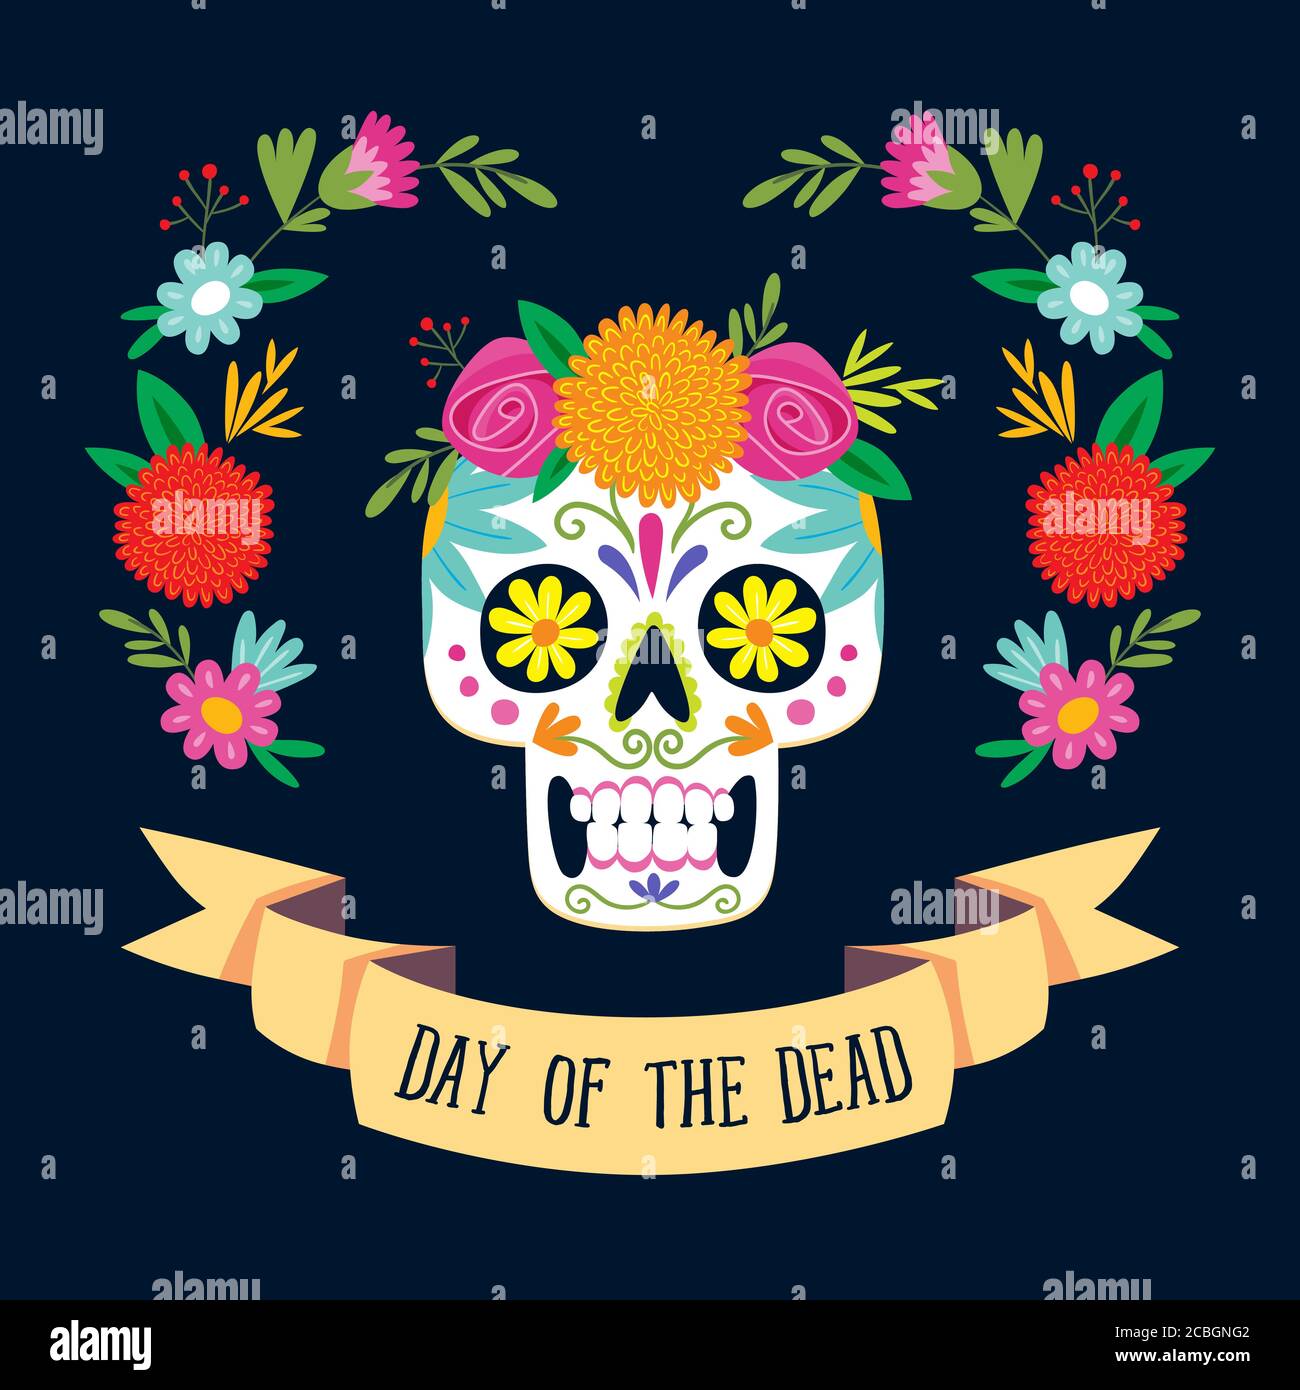 Scheda "Dia de los Muertos" (giorno del morto) con testo in inglese. Cranio di zucchero messicano con decorazione floreale. Illustrazione vettoriale. Illustrazione Vettoriale